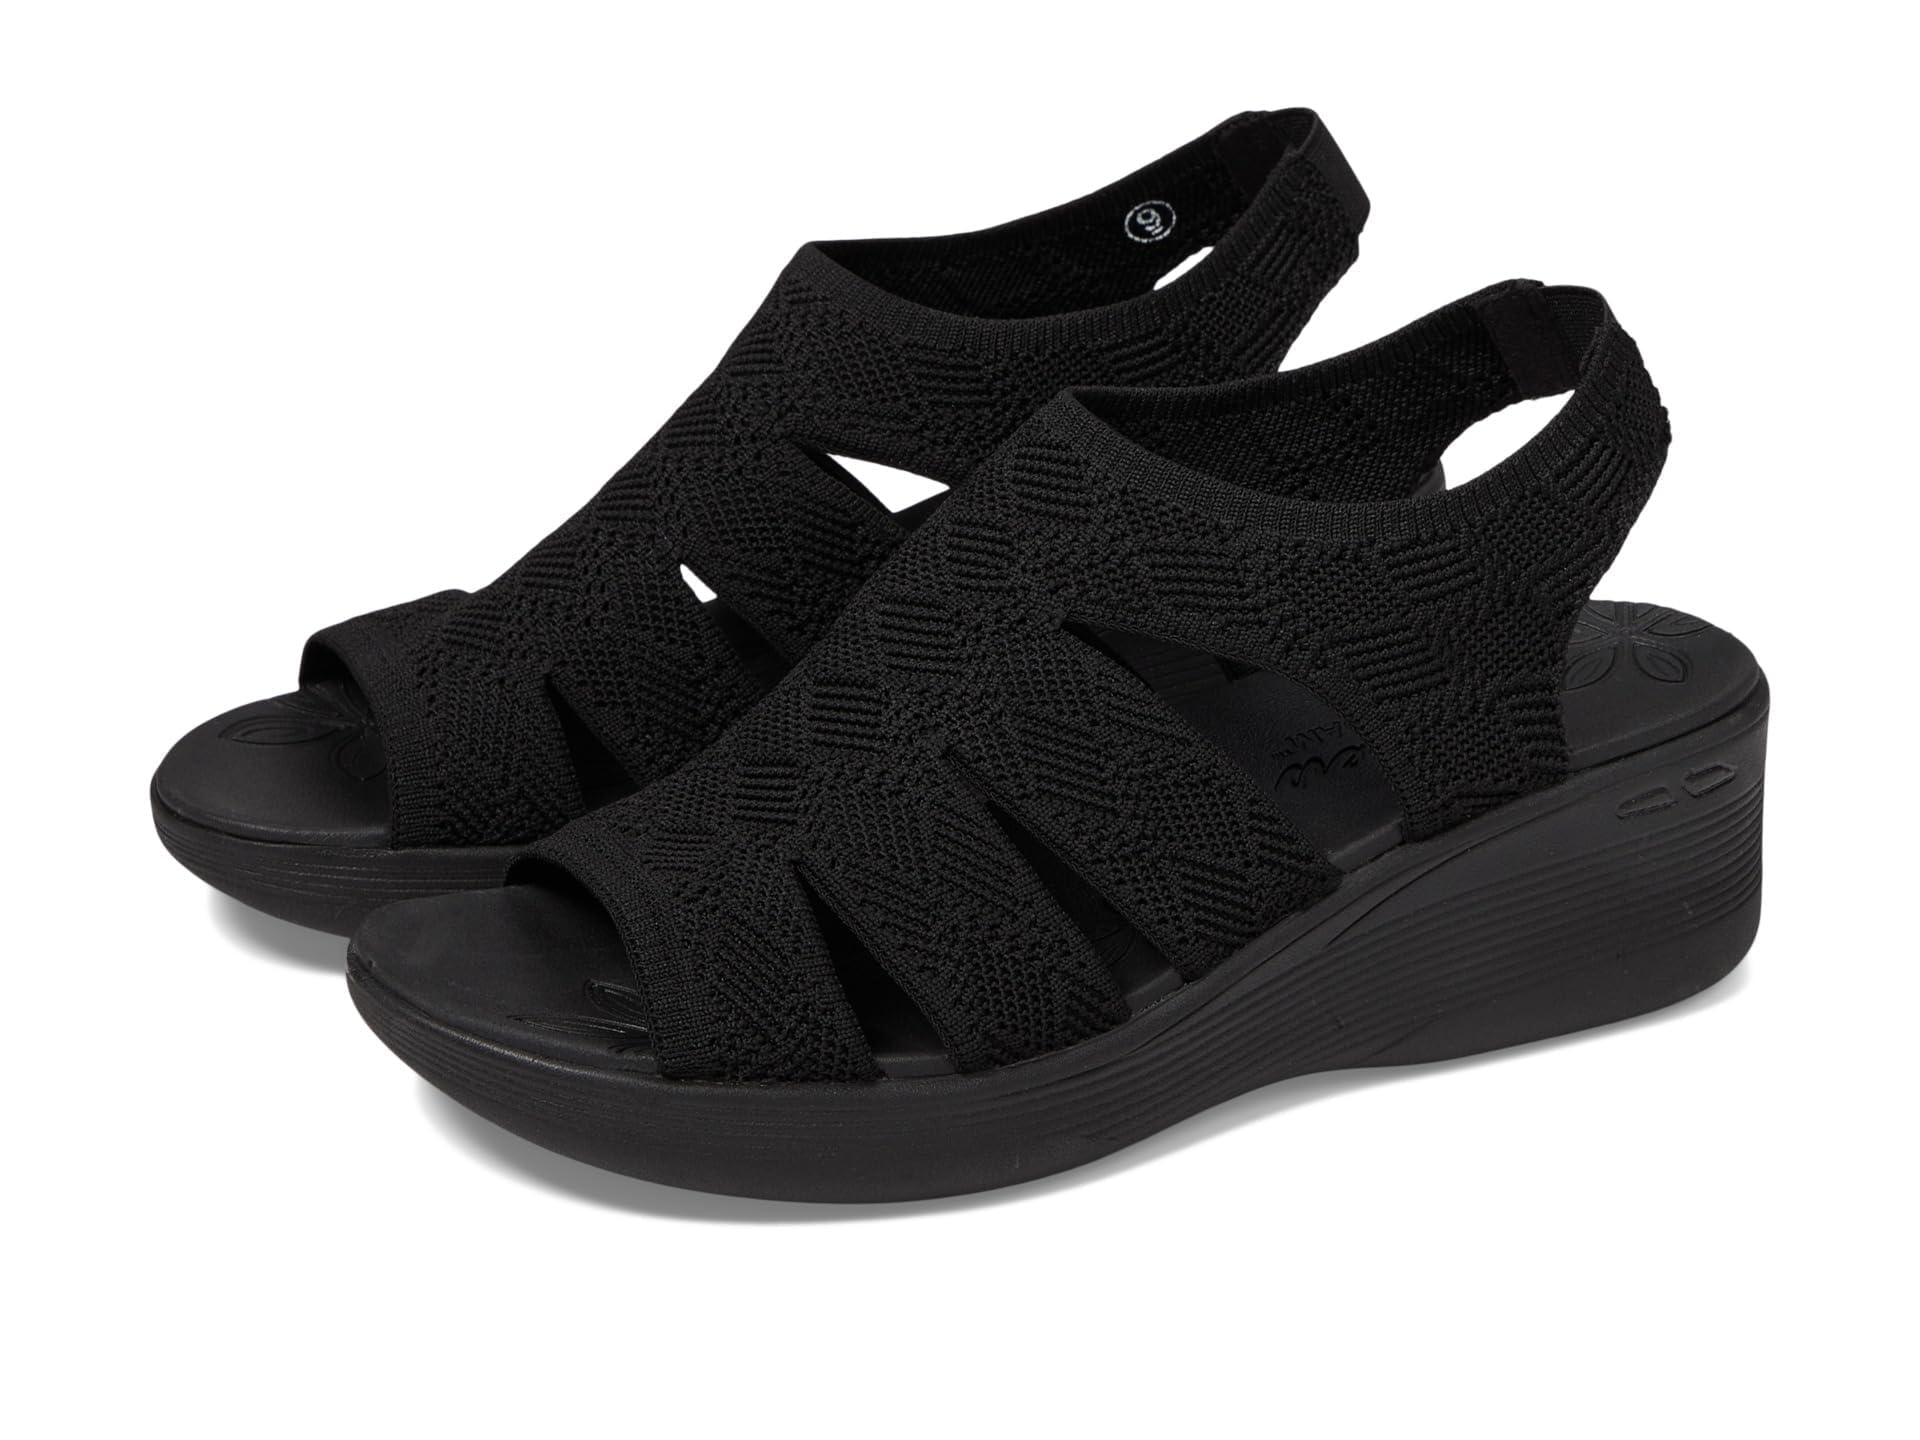 Skechers Women's PIER-LITE-Memory Maker Wedge Sandal, Black/Black, 7